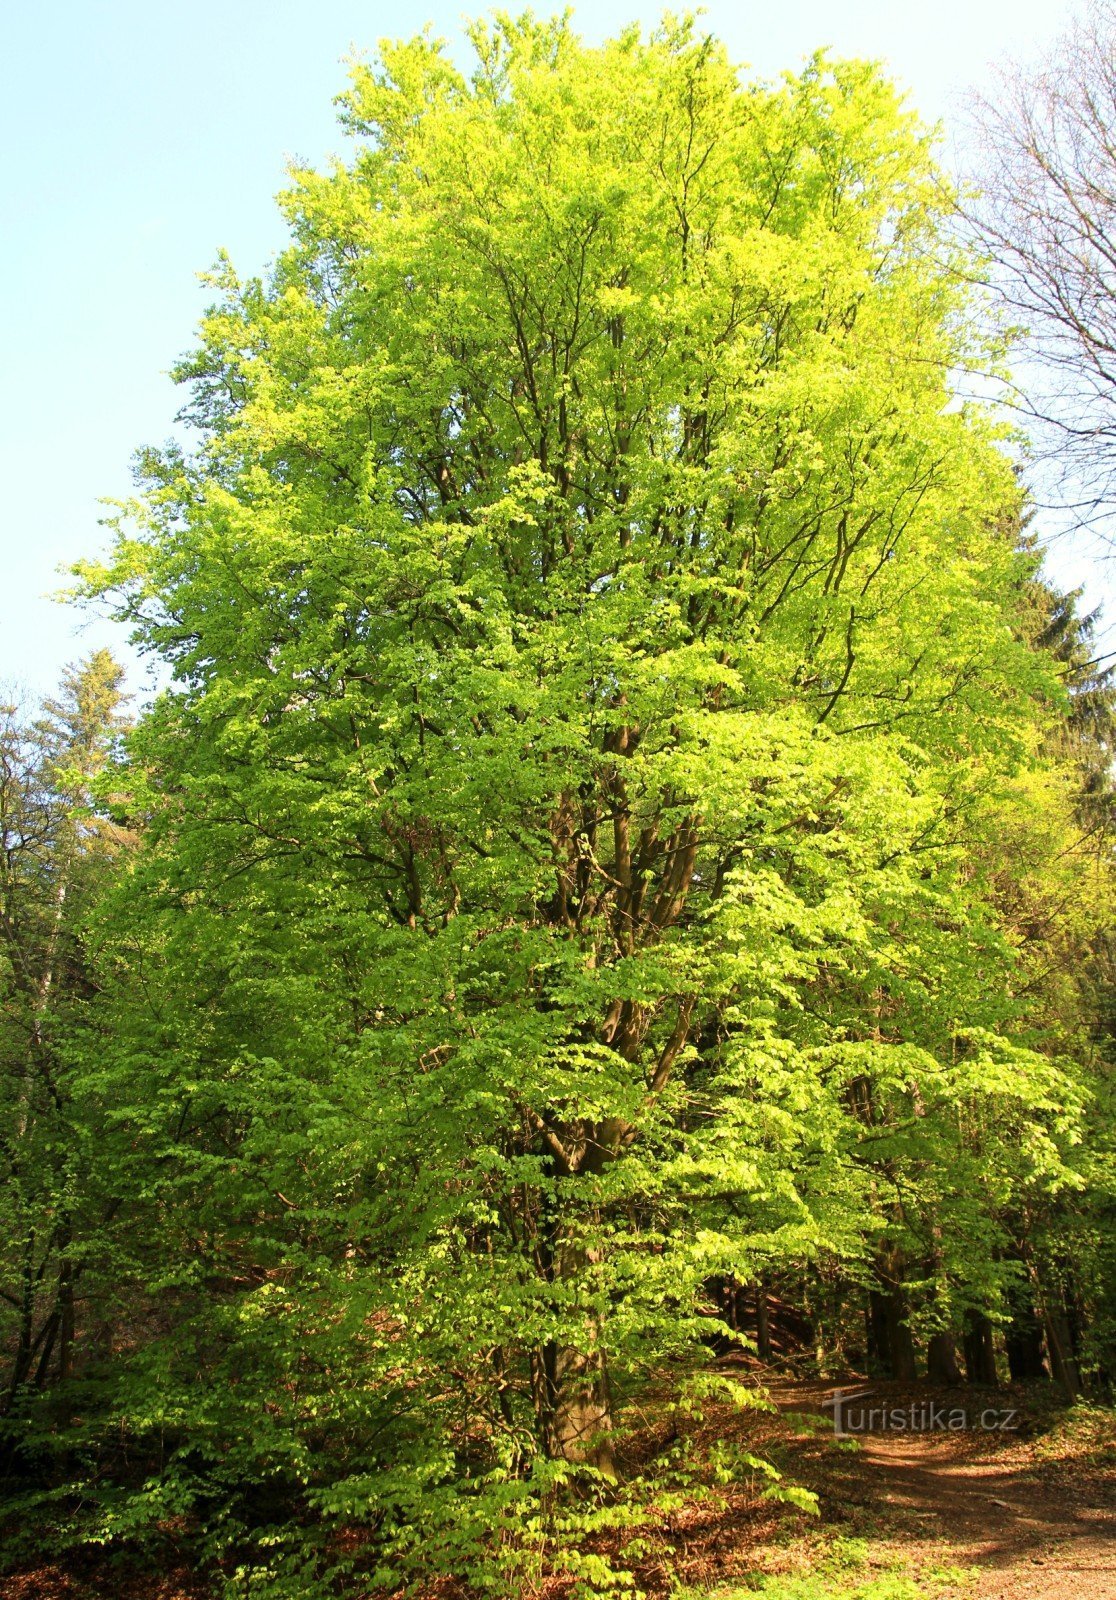 Cây sồi rừng trên Drápelky